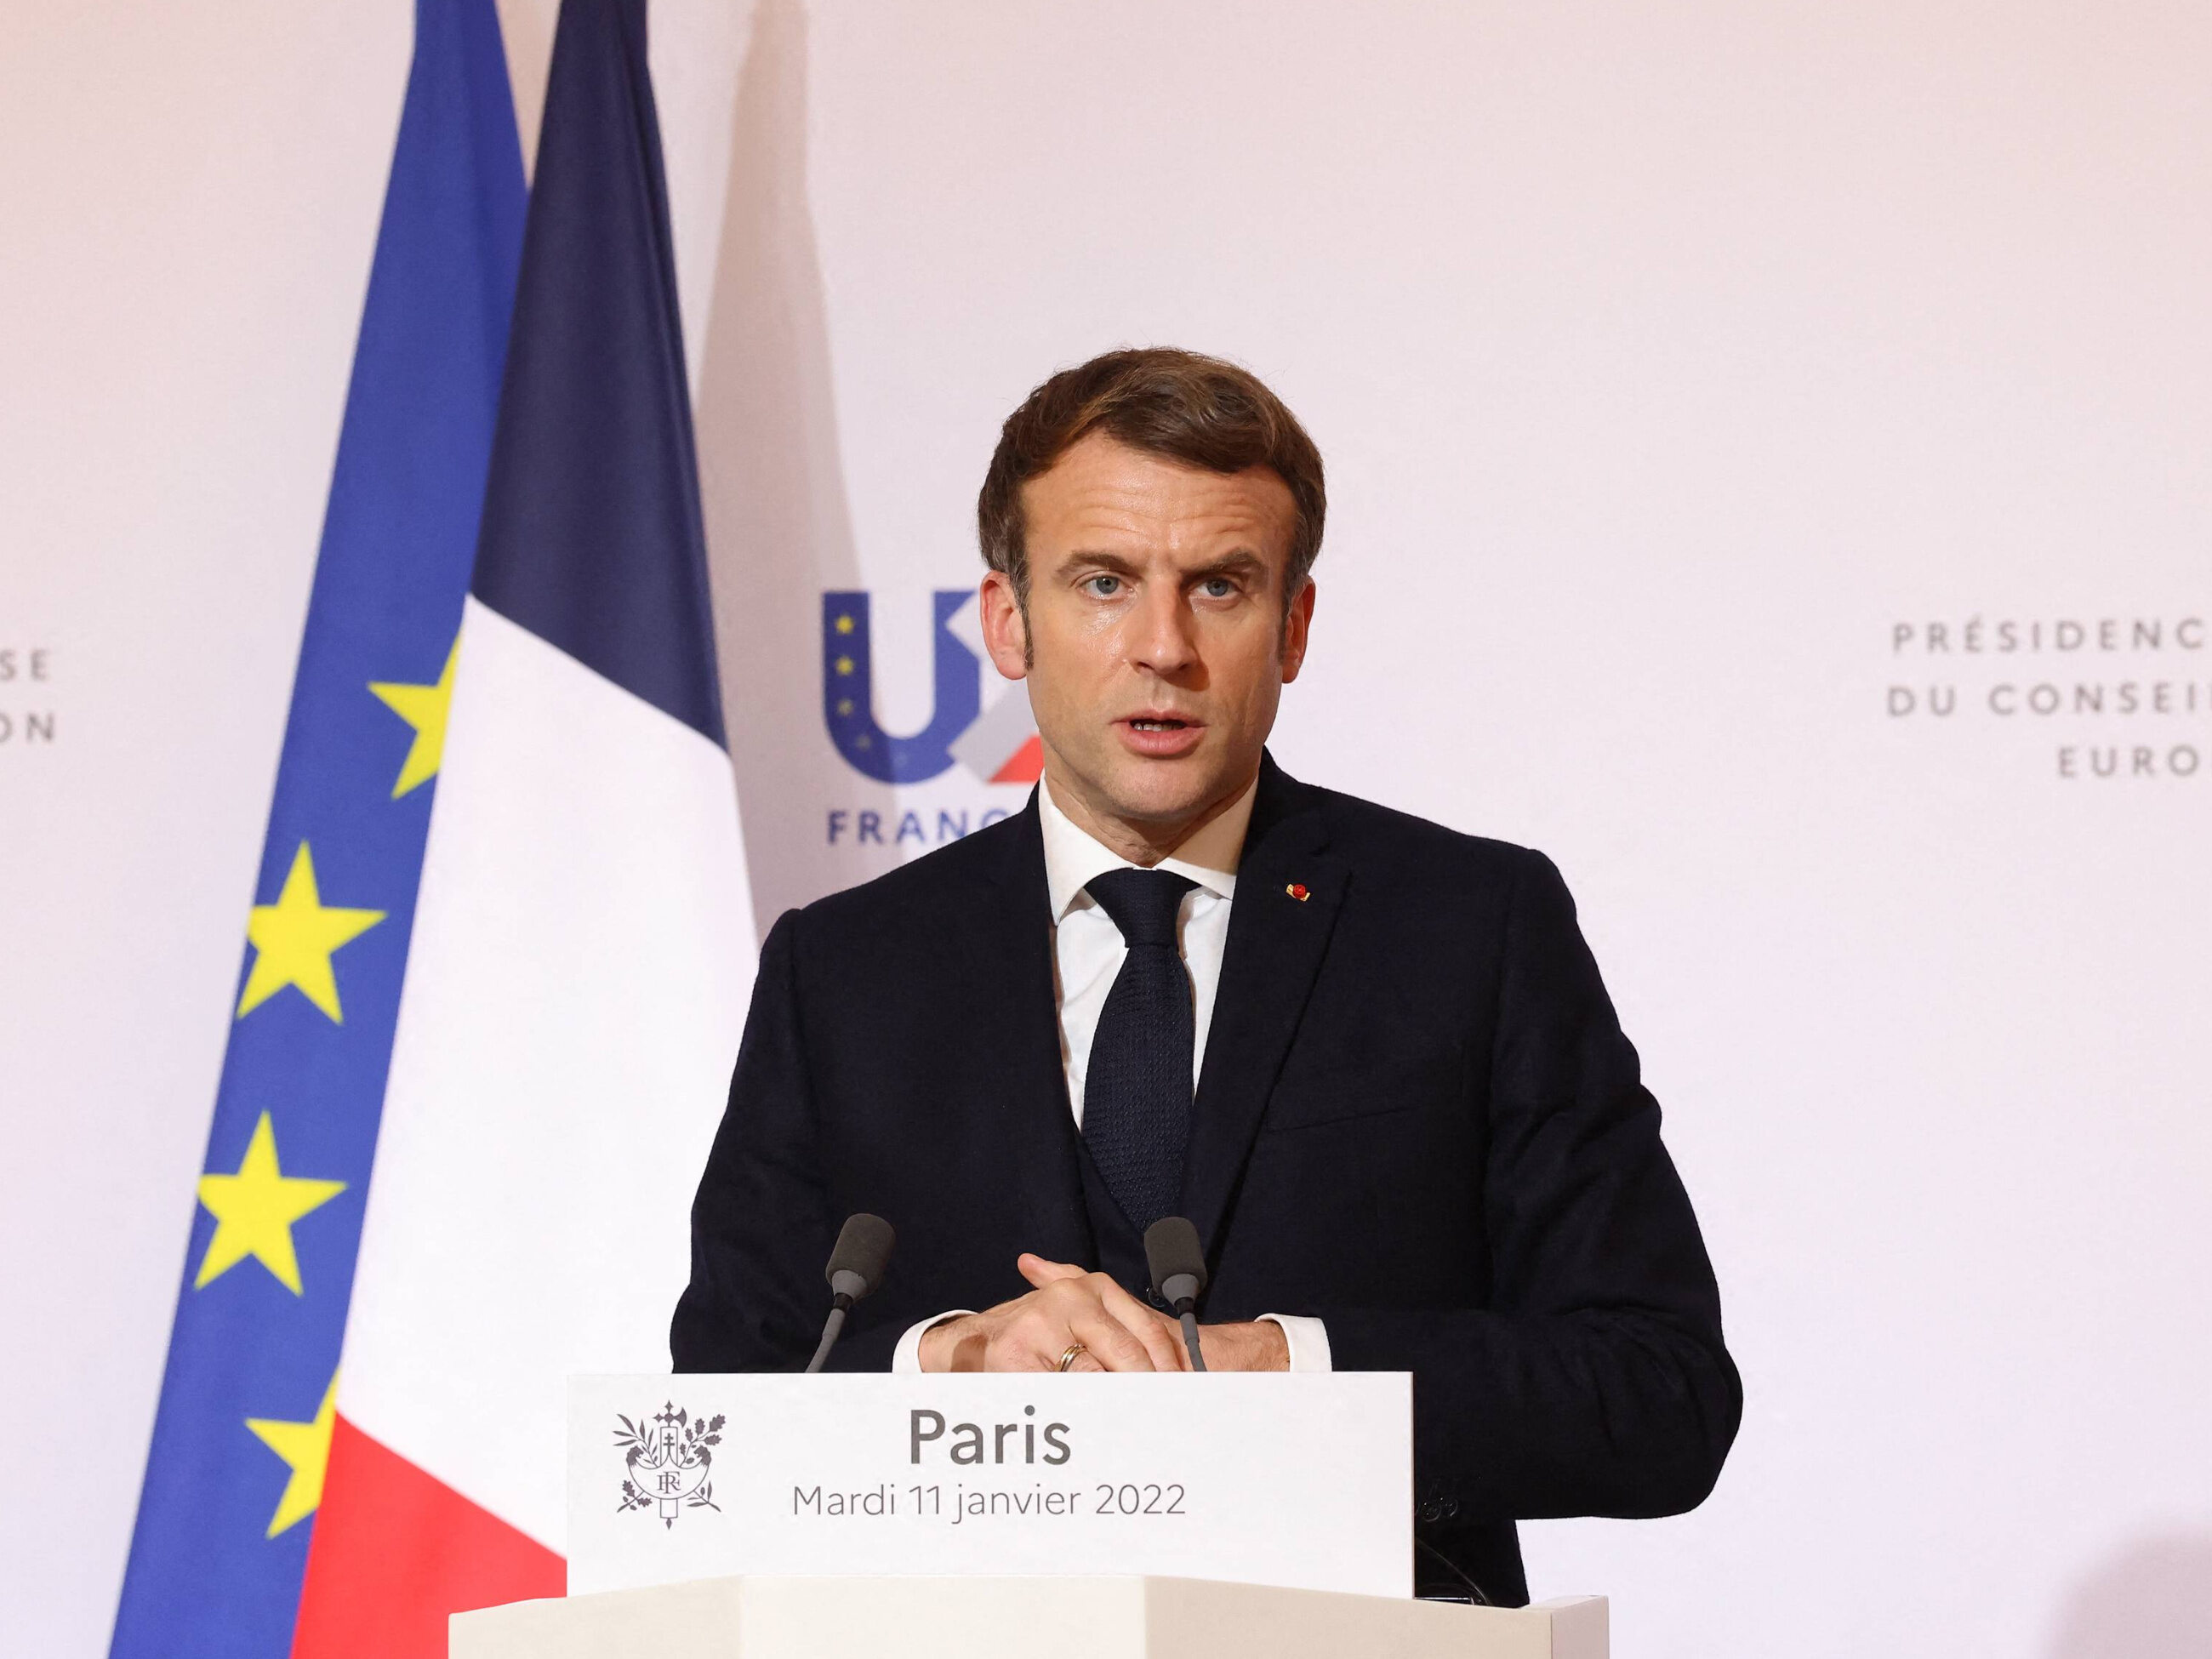 La France interdit l’inceste pour la première fois depuis 1791. Emmanuel Macron critiqué – Wprost